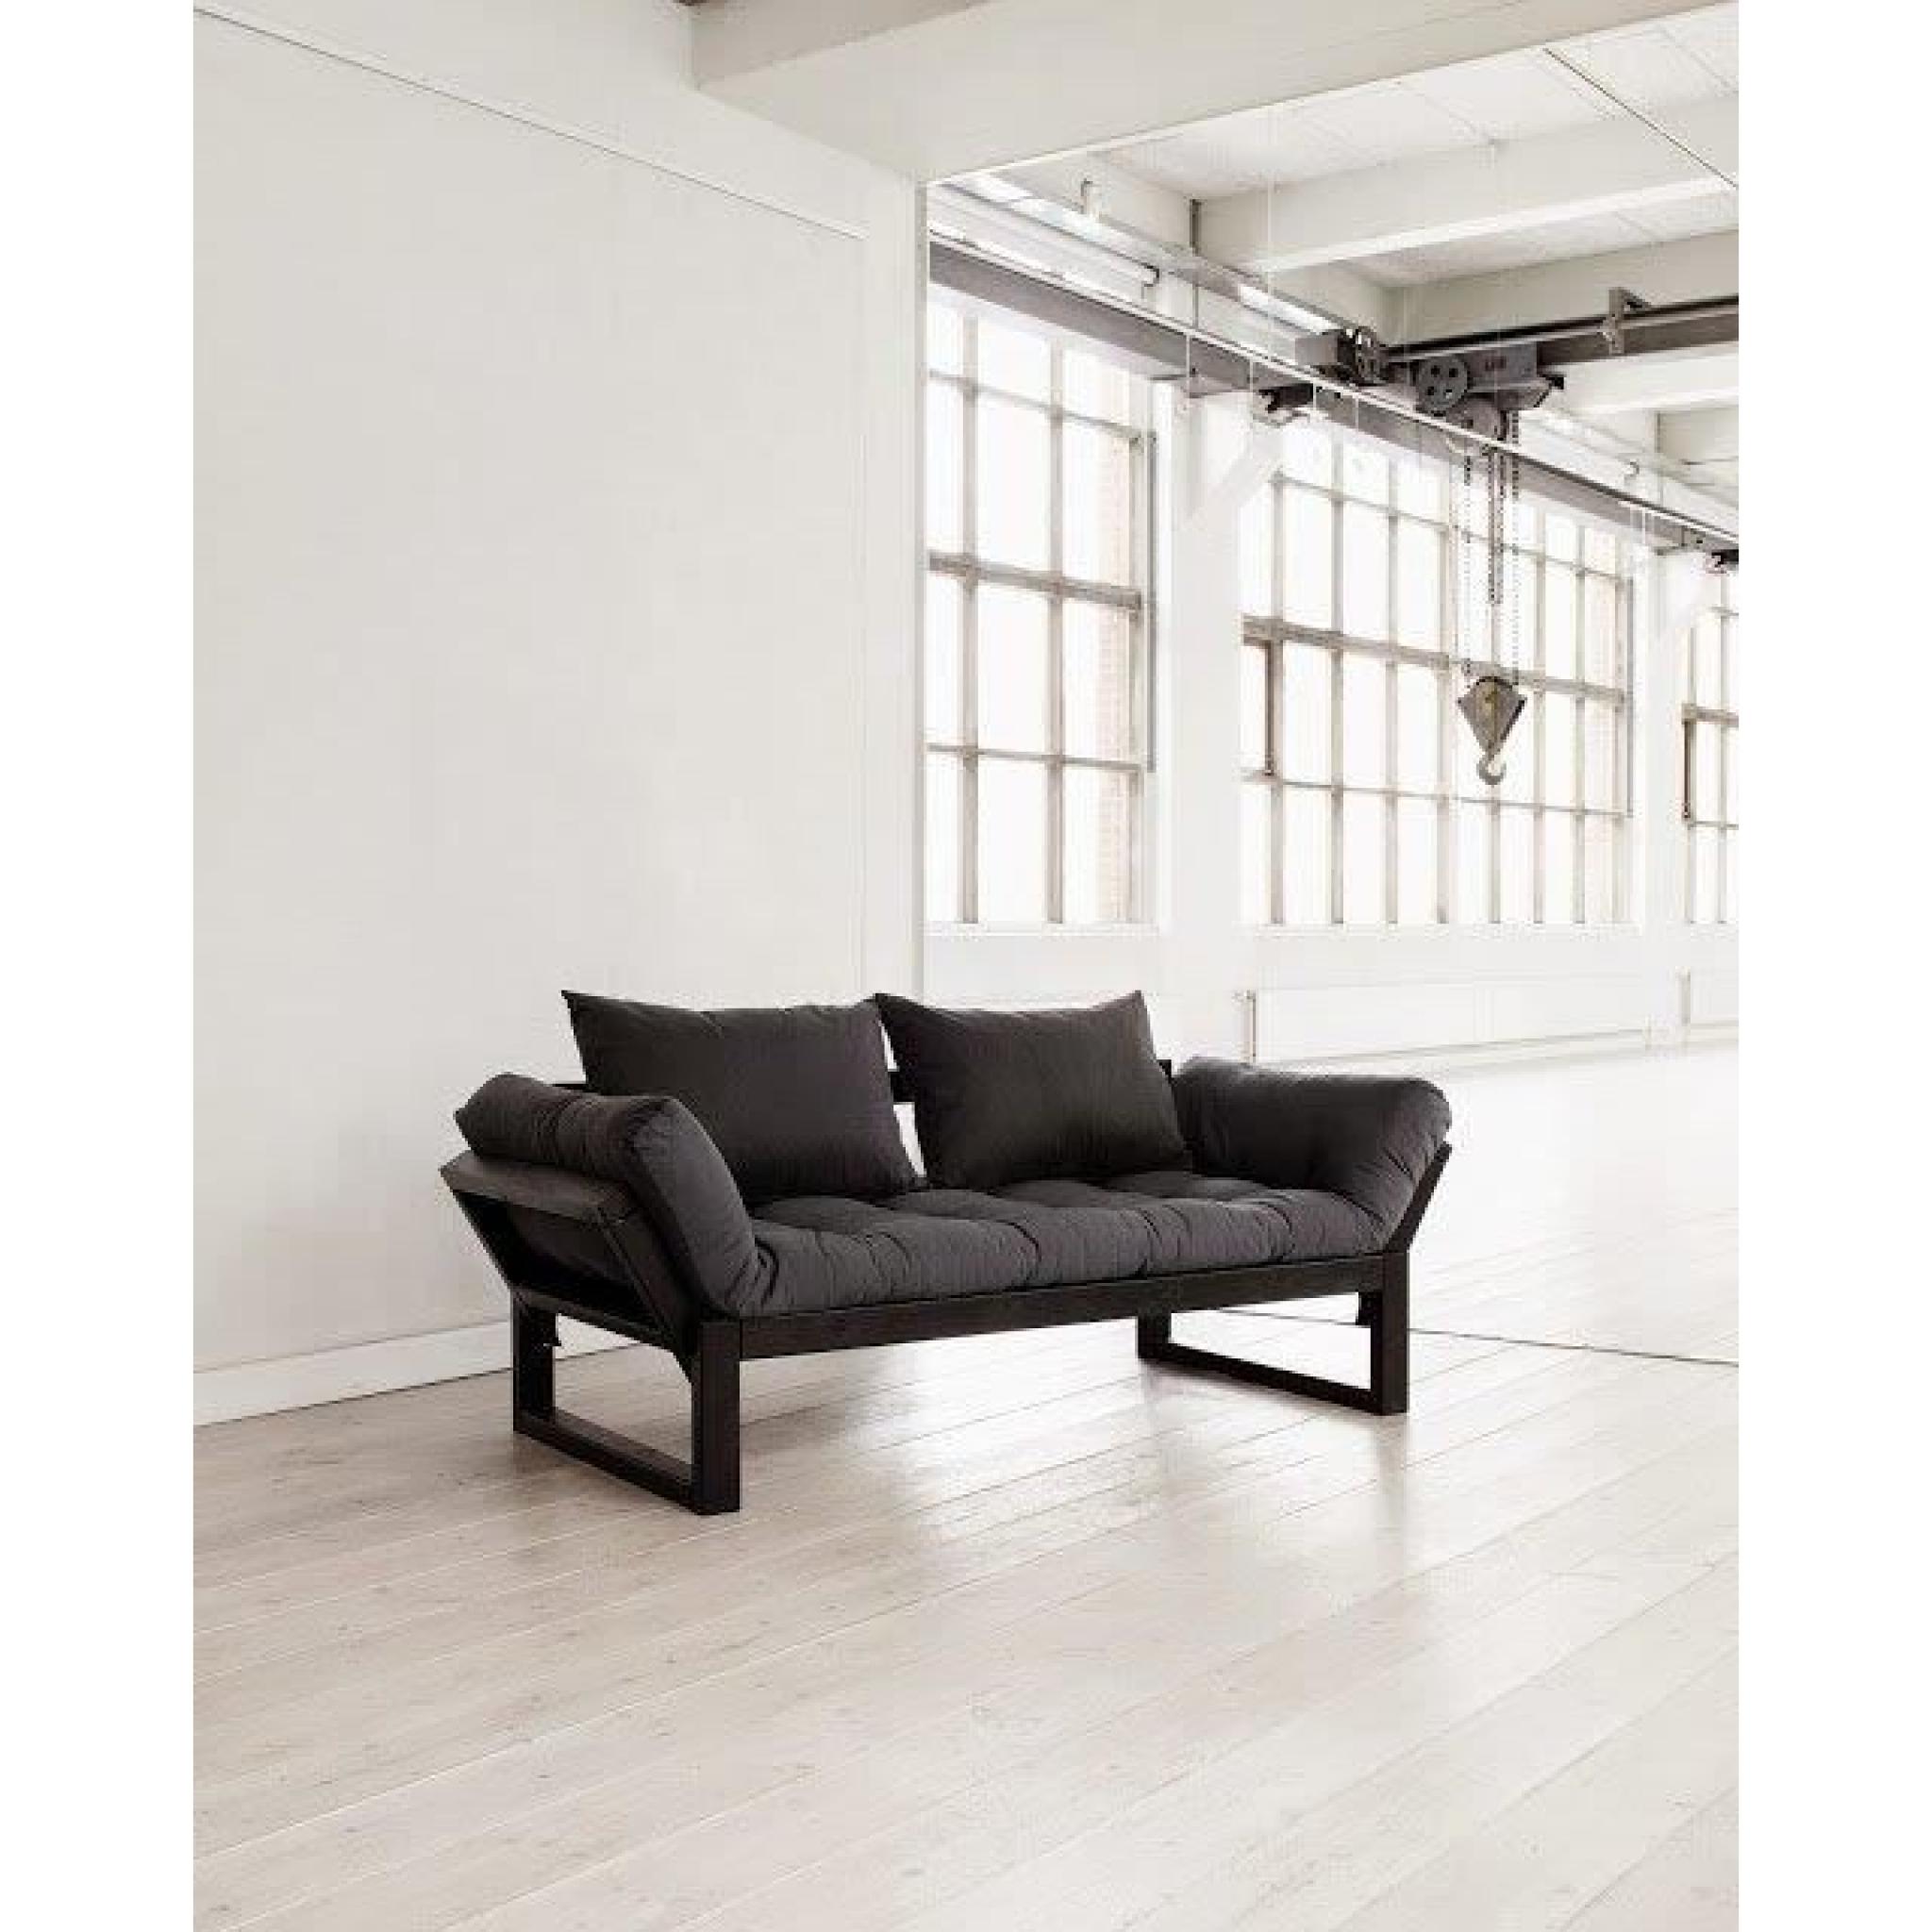 Banquette méridienne noire futon grey graphite EDGE couchage 75*200cm pas cher